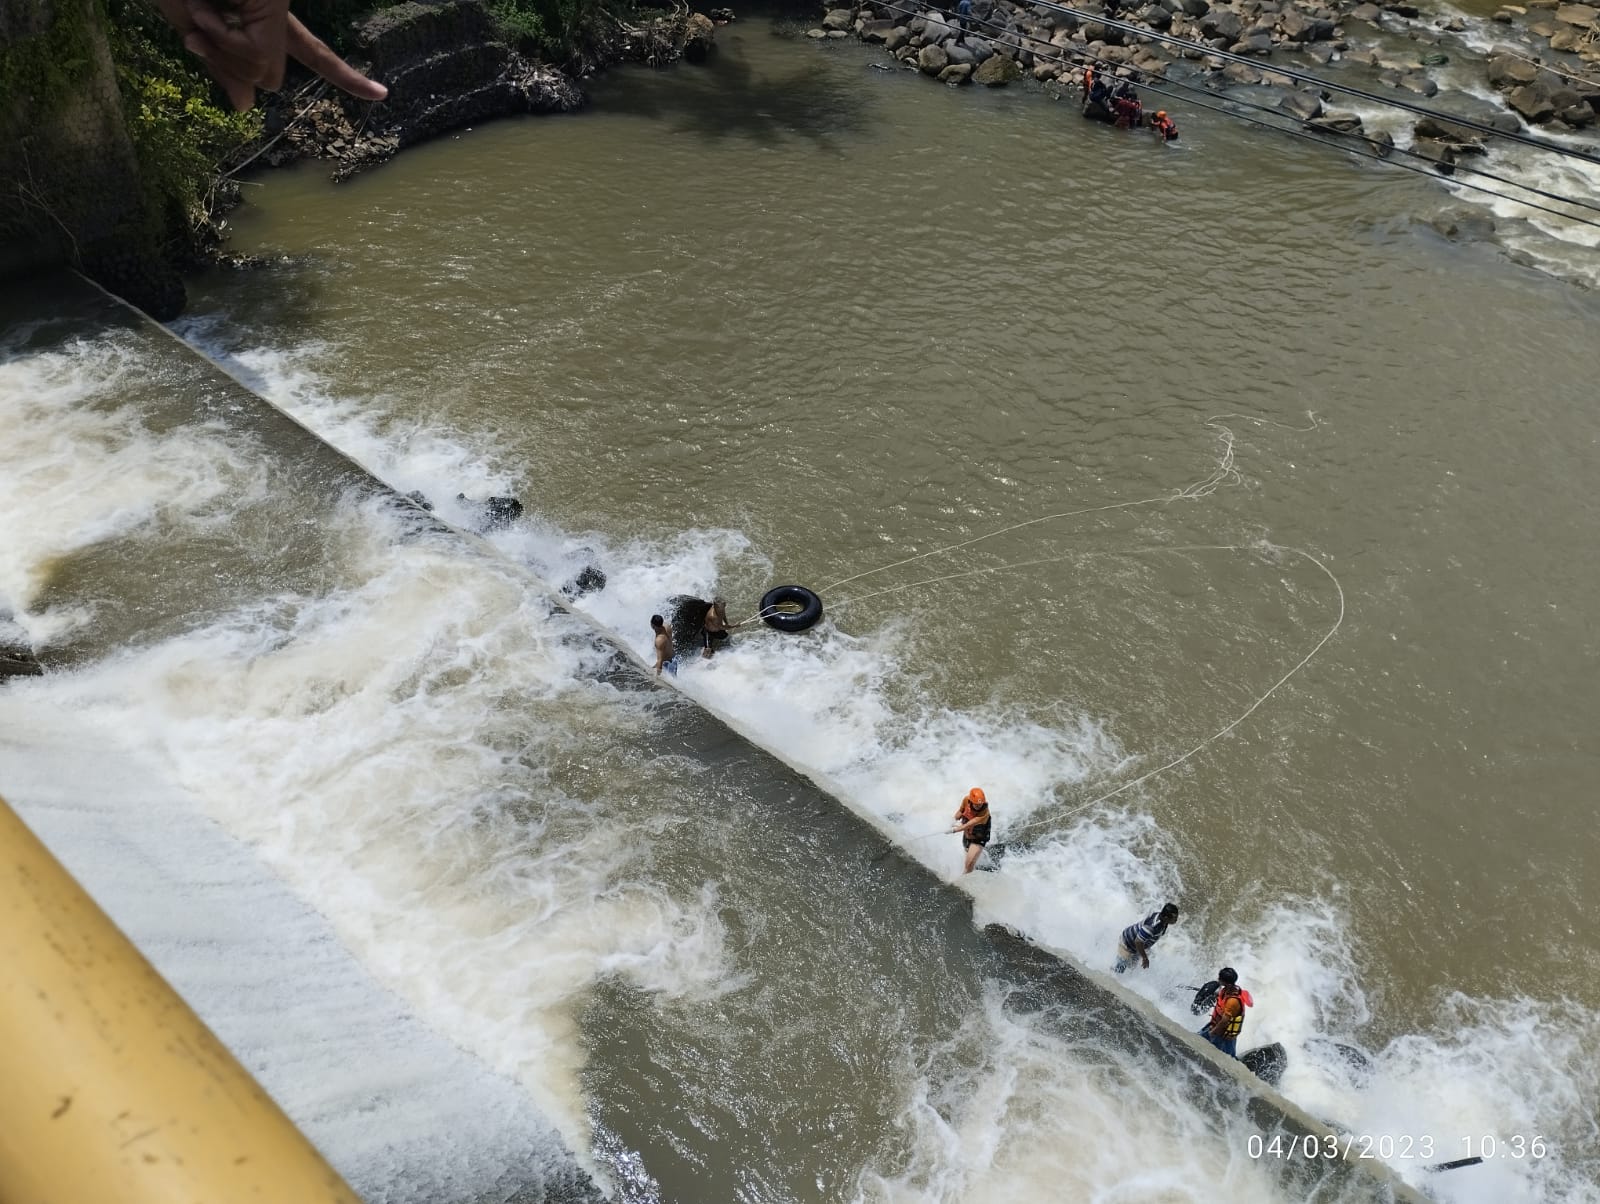 Dicari 1 Jam Lebih, Wanita Hamil Yang Jatuh di Bendungan Sungai Logawa Berhasil Ditemukan